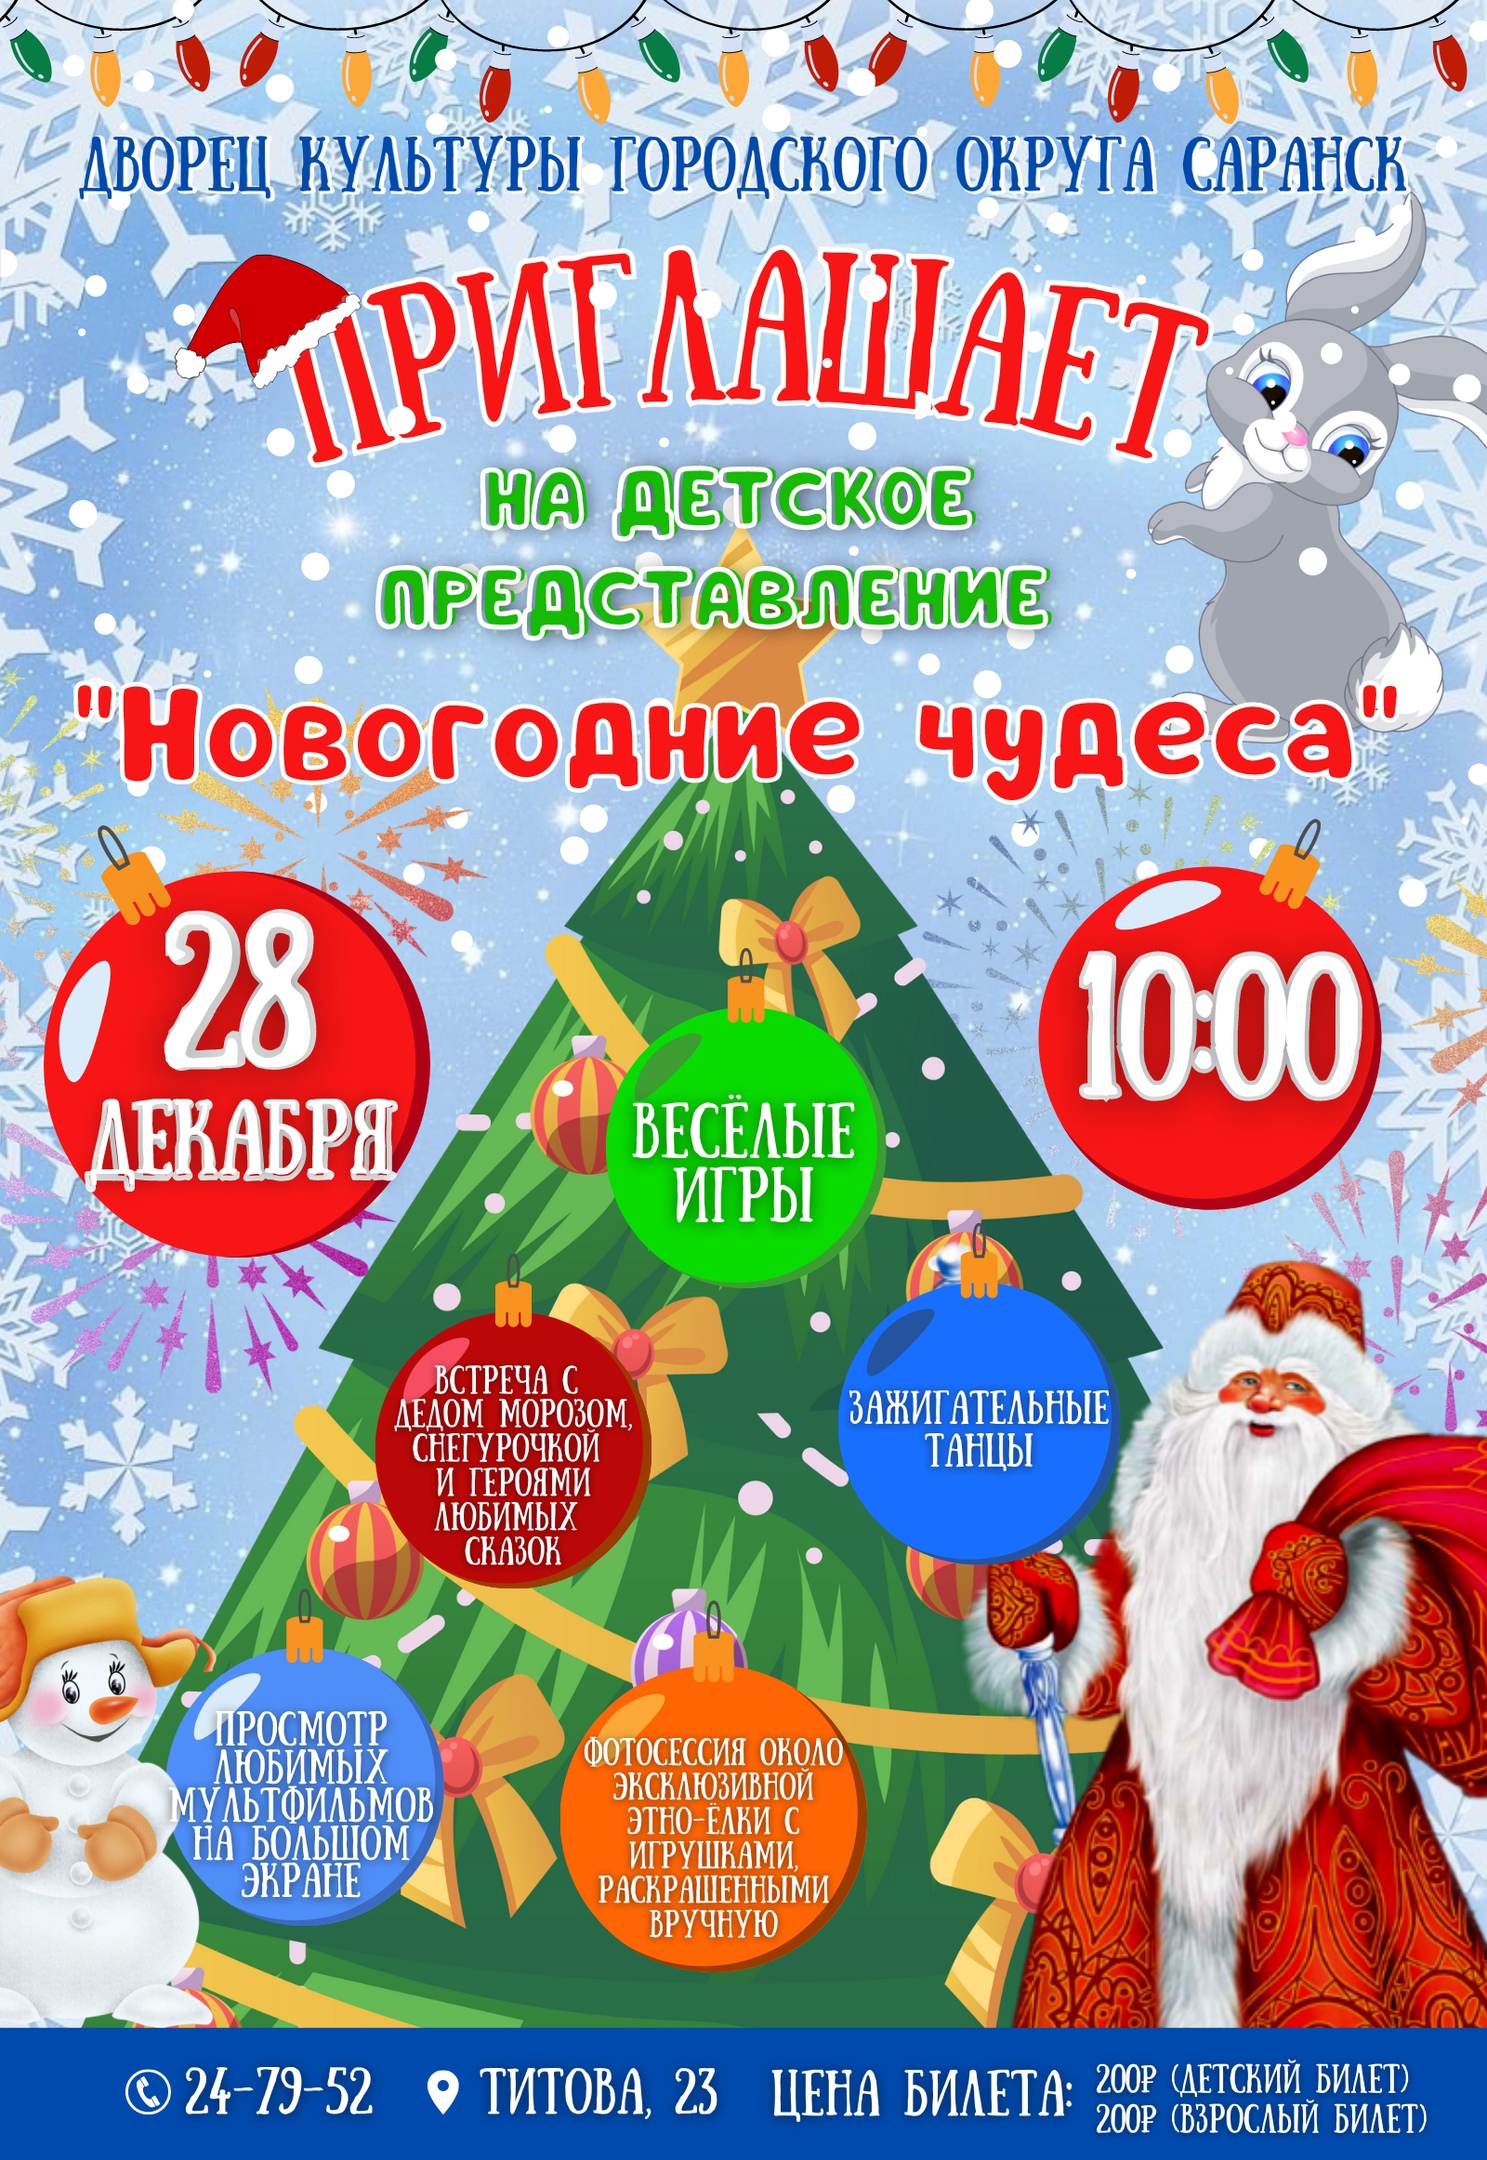 28 декабря в 10.00 Дворец культуры городского округа Саранск приглашает на детское театрализованное представление "Новогодние чудеса"